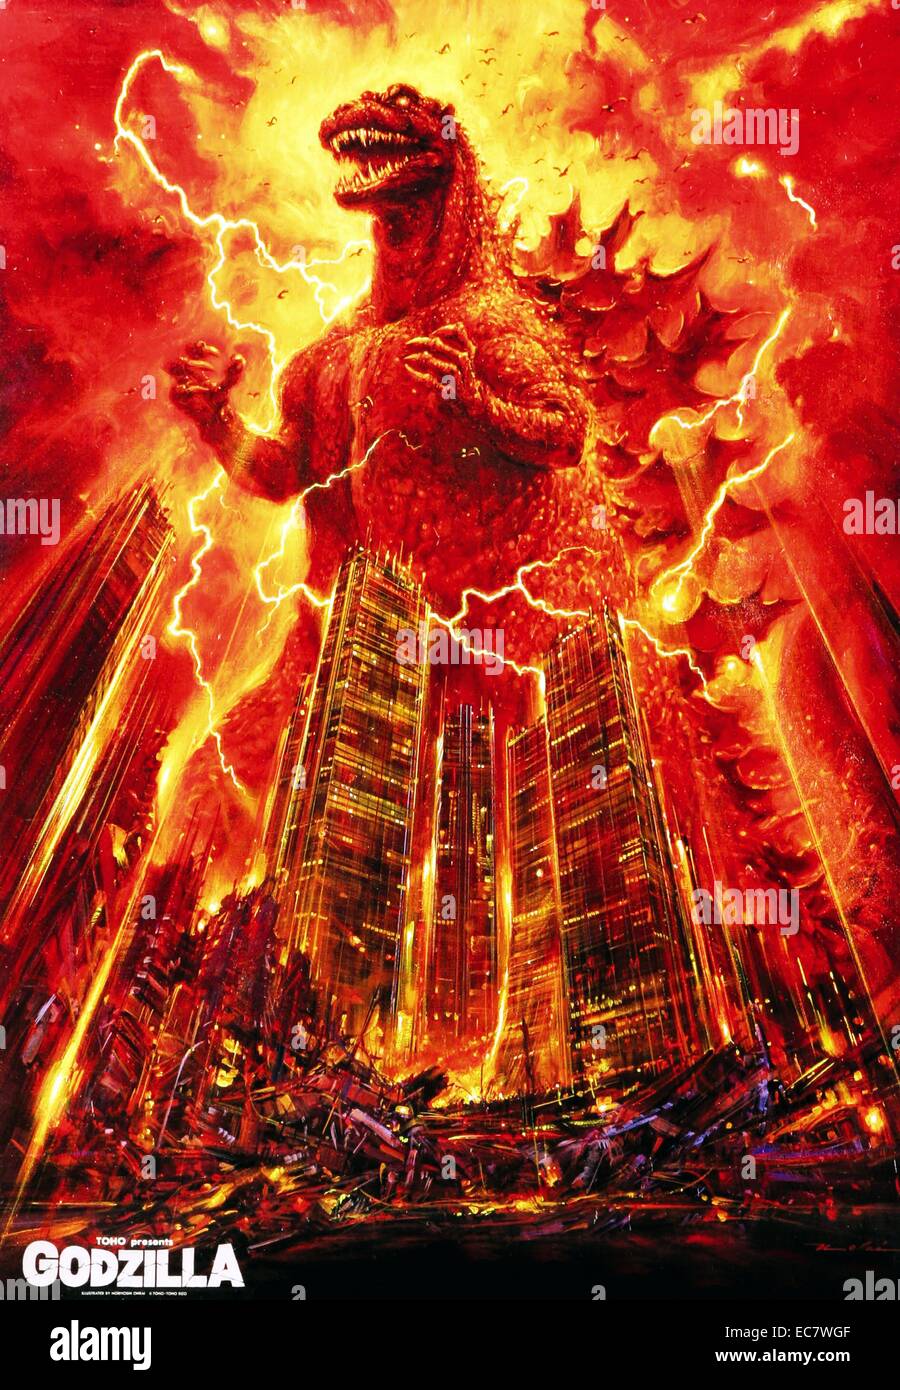 La version 1984 de Godzilla un monstre géant ou daikaiju provenant d'une série de films ritual du même nom du Japon. La première fois dans le film Ishirō Honda 1954 Godzilla. Depuis, Godzilla est devenue une icône de la culture pop dans le monde entier. Banque D'Images